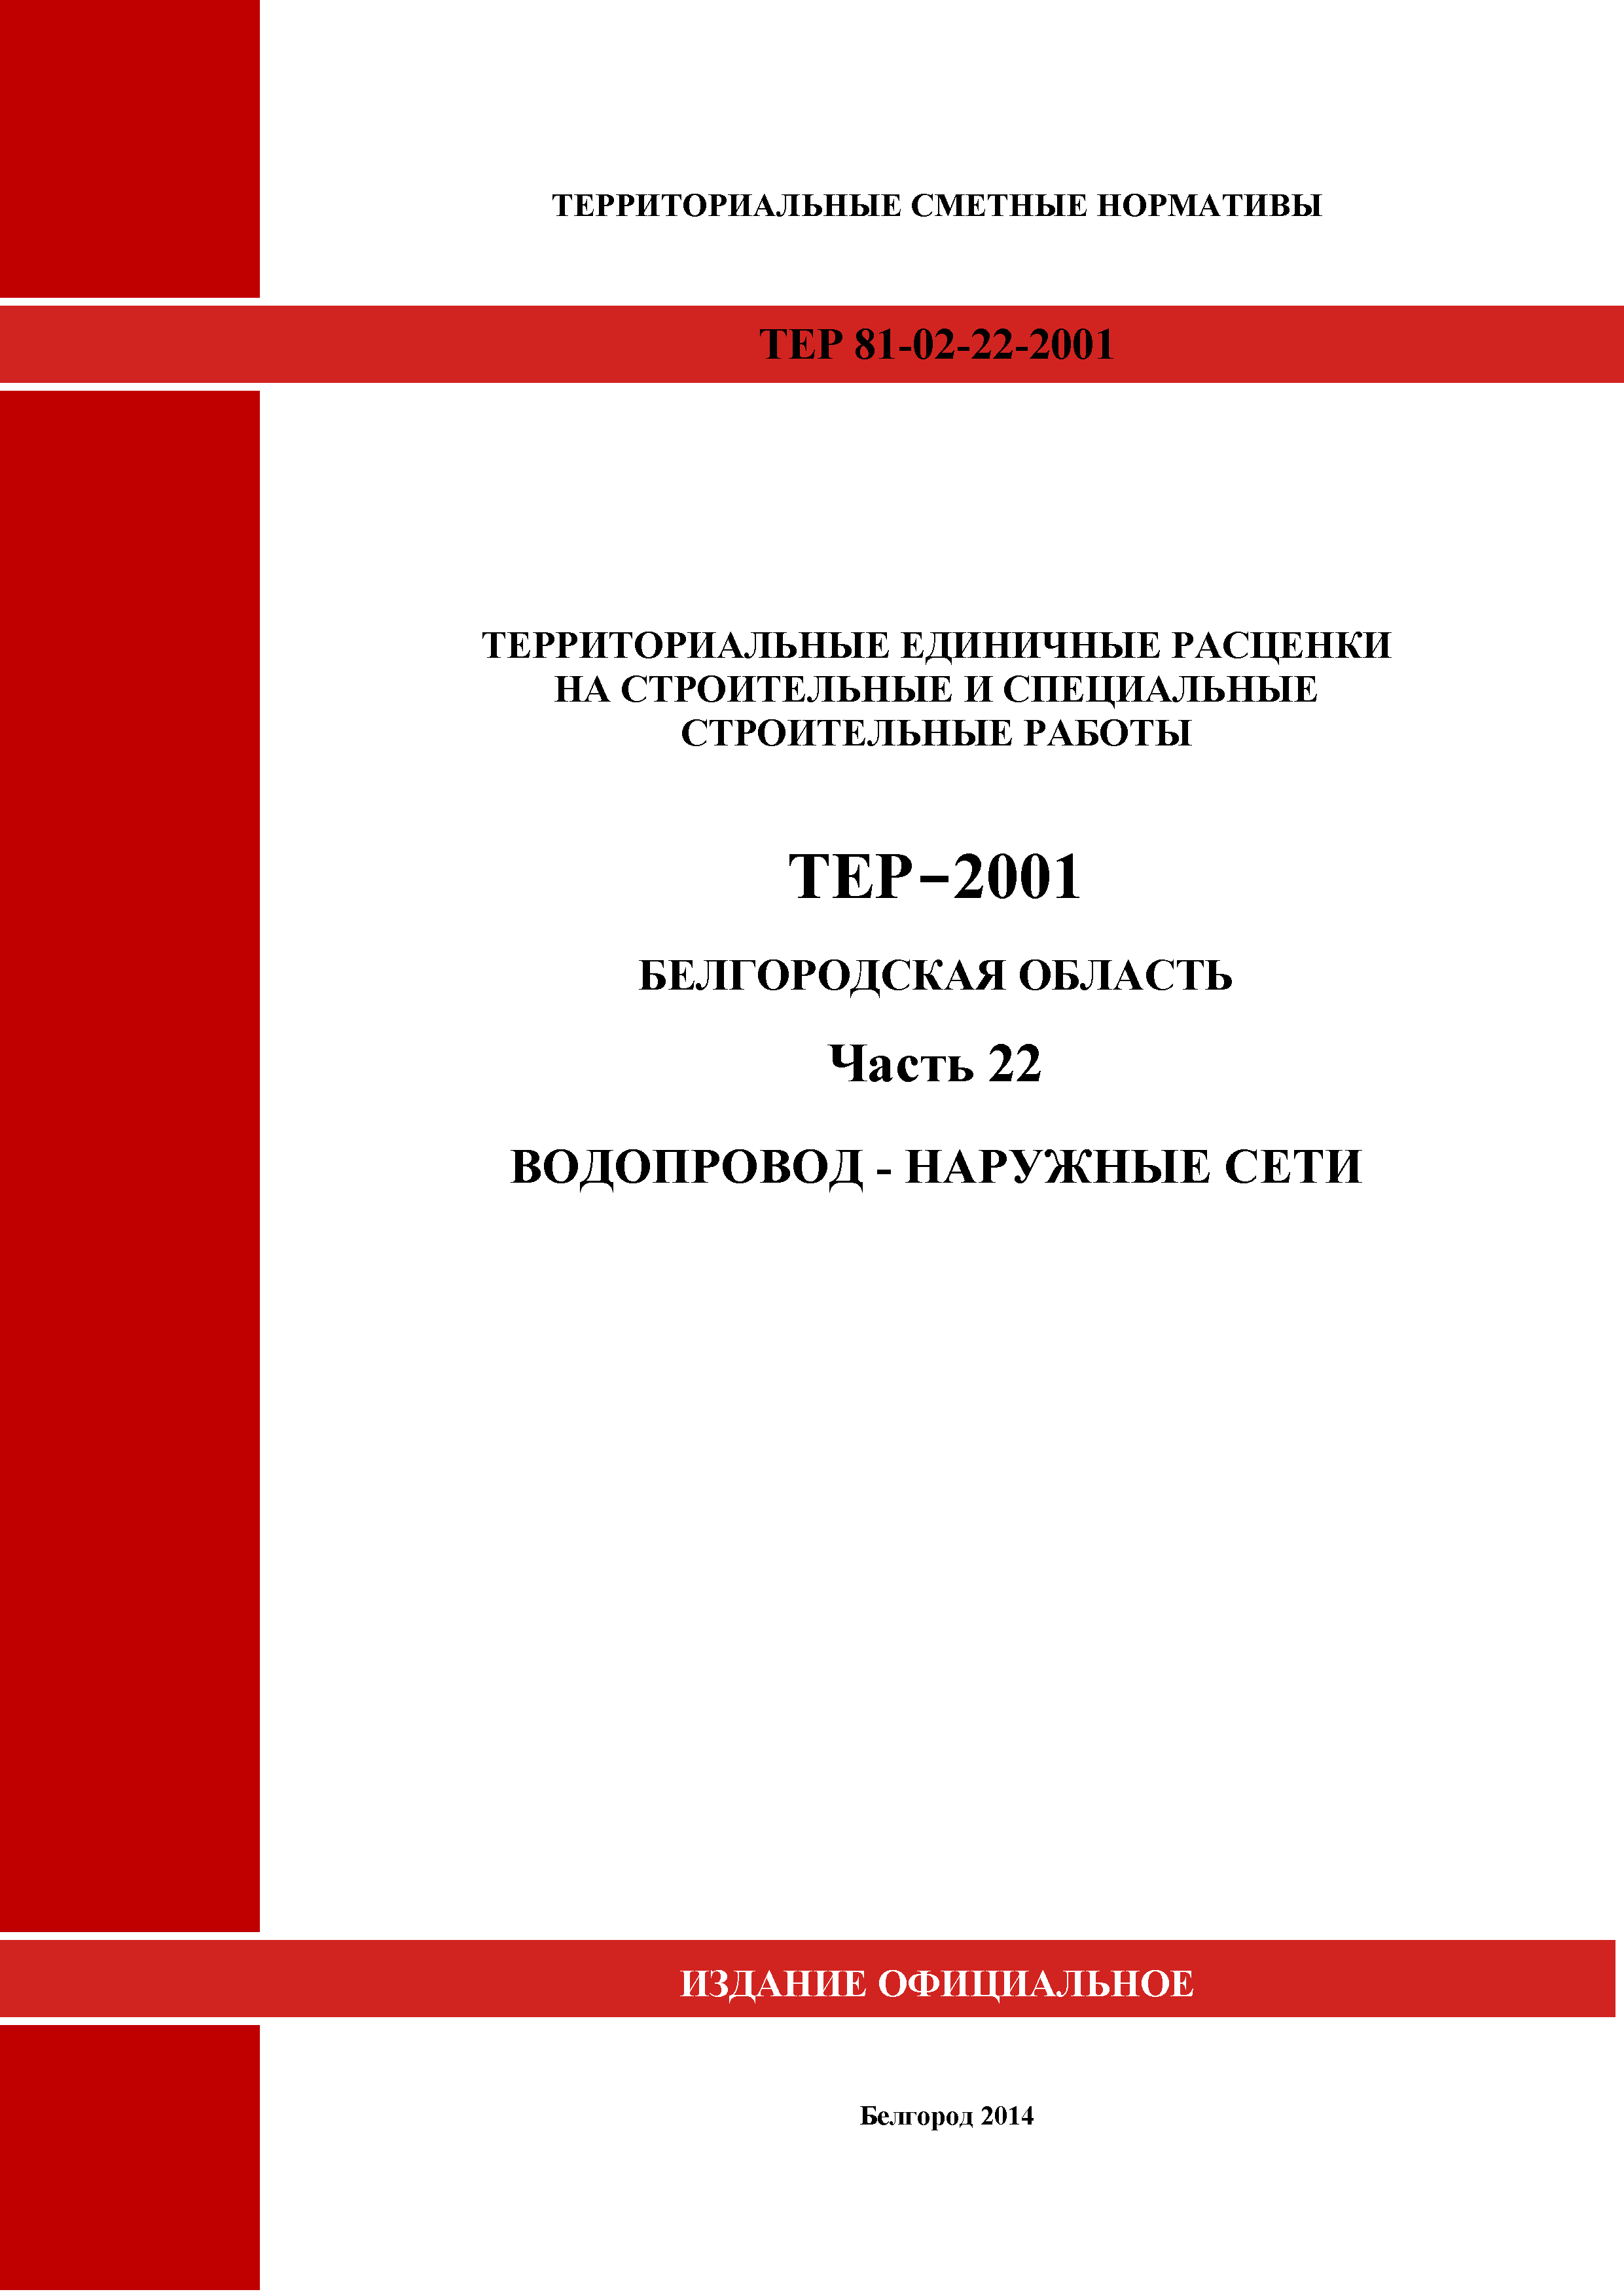 ТЕР Белгородская область 81-02-22-2001